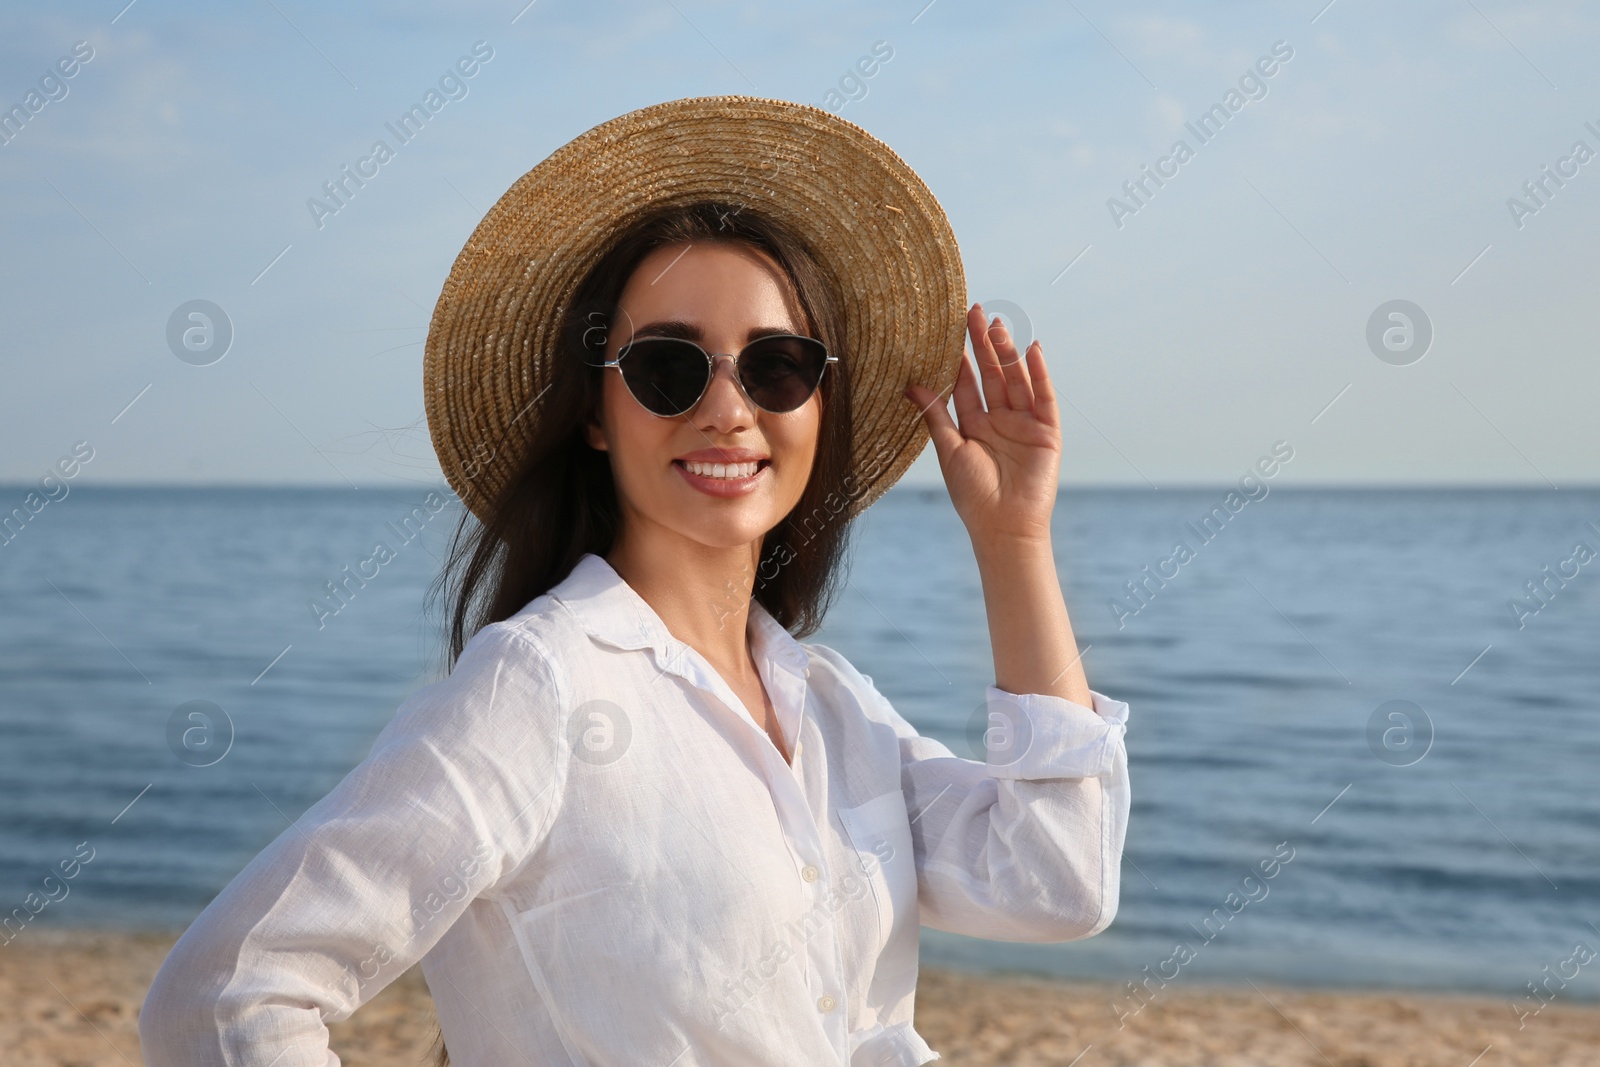 Photo of Beautiful young woman wearing straw hat and sunglasses on beach. Stylish headdress